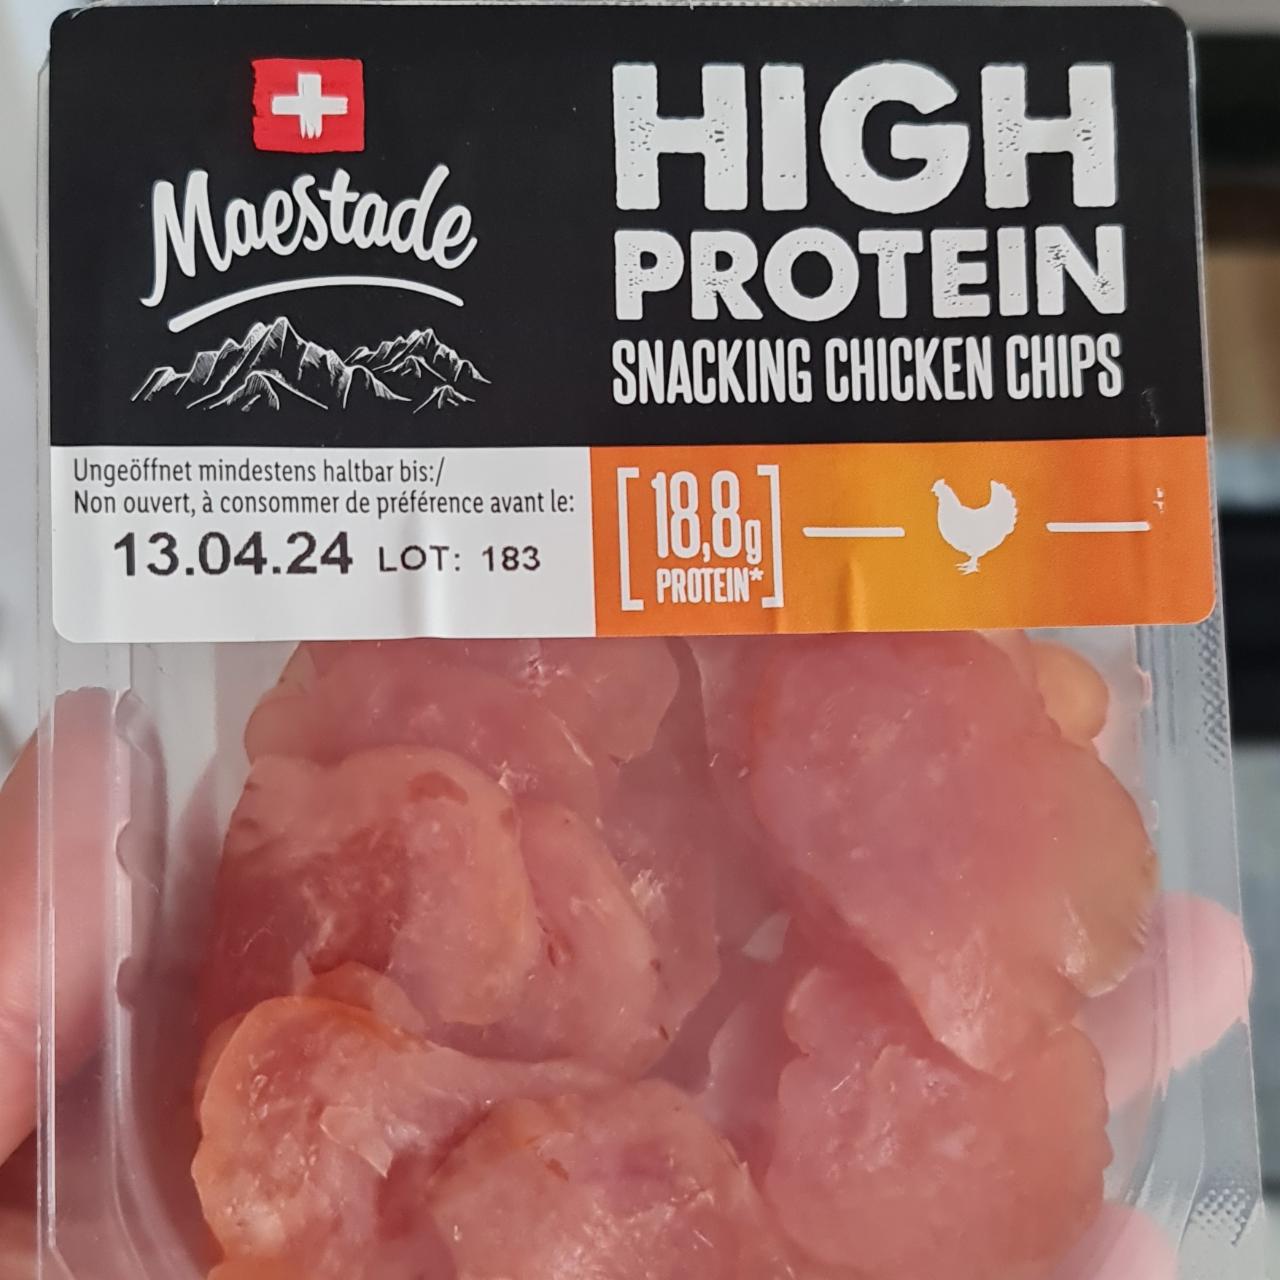 Fotografie - High protein snacking chicken chips Maestade